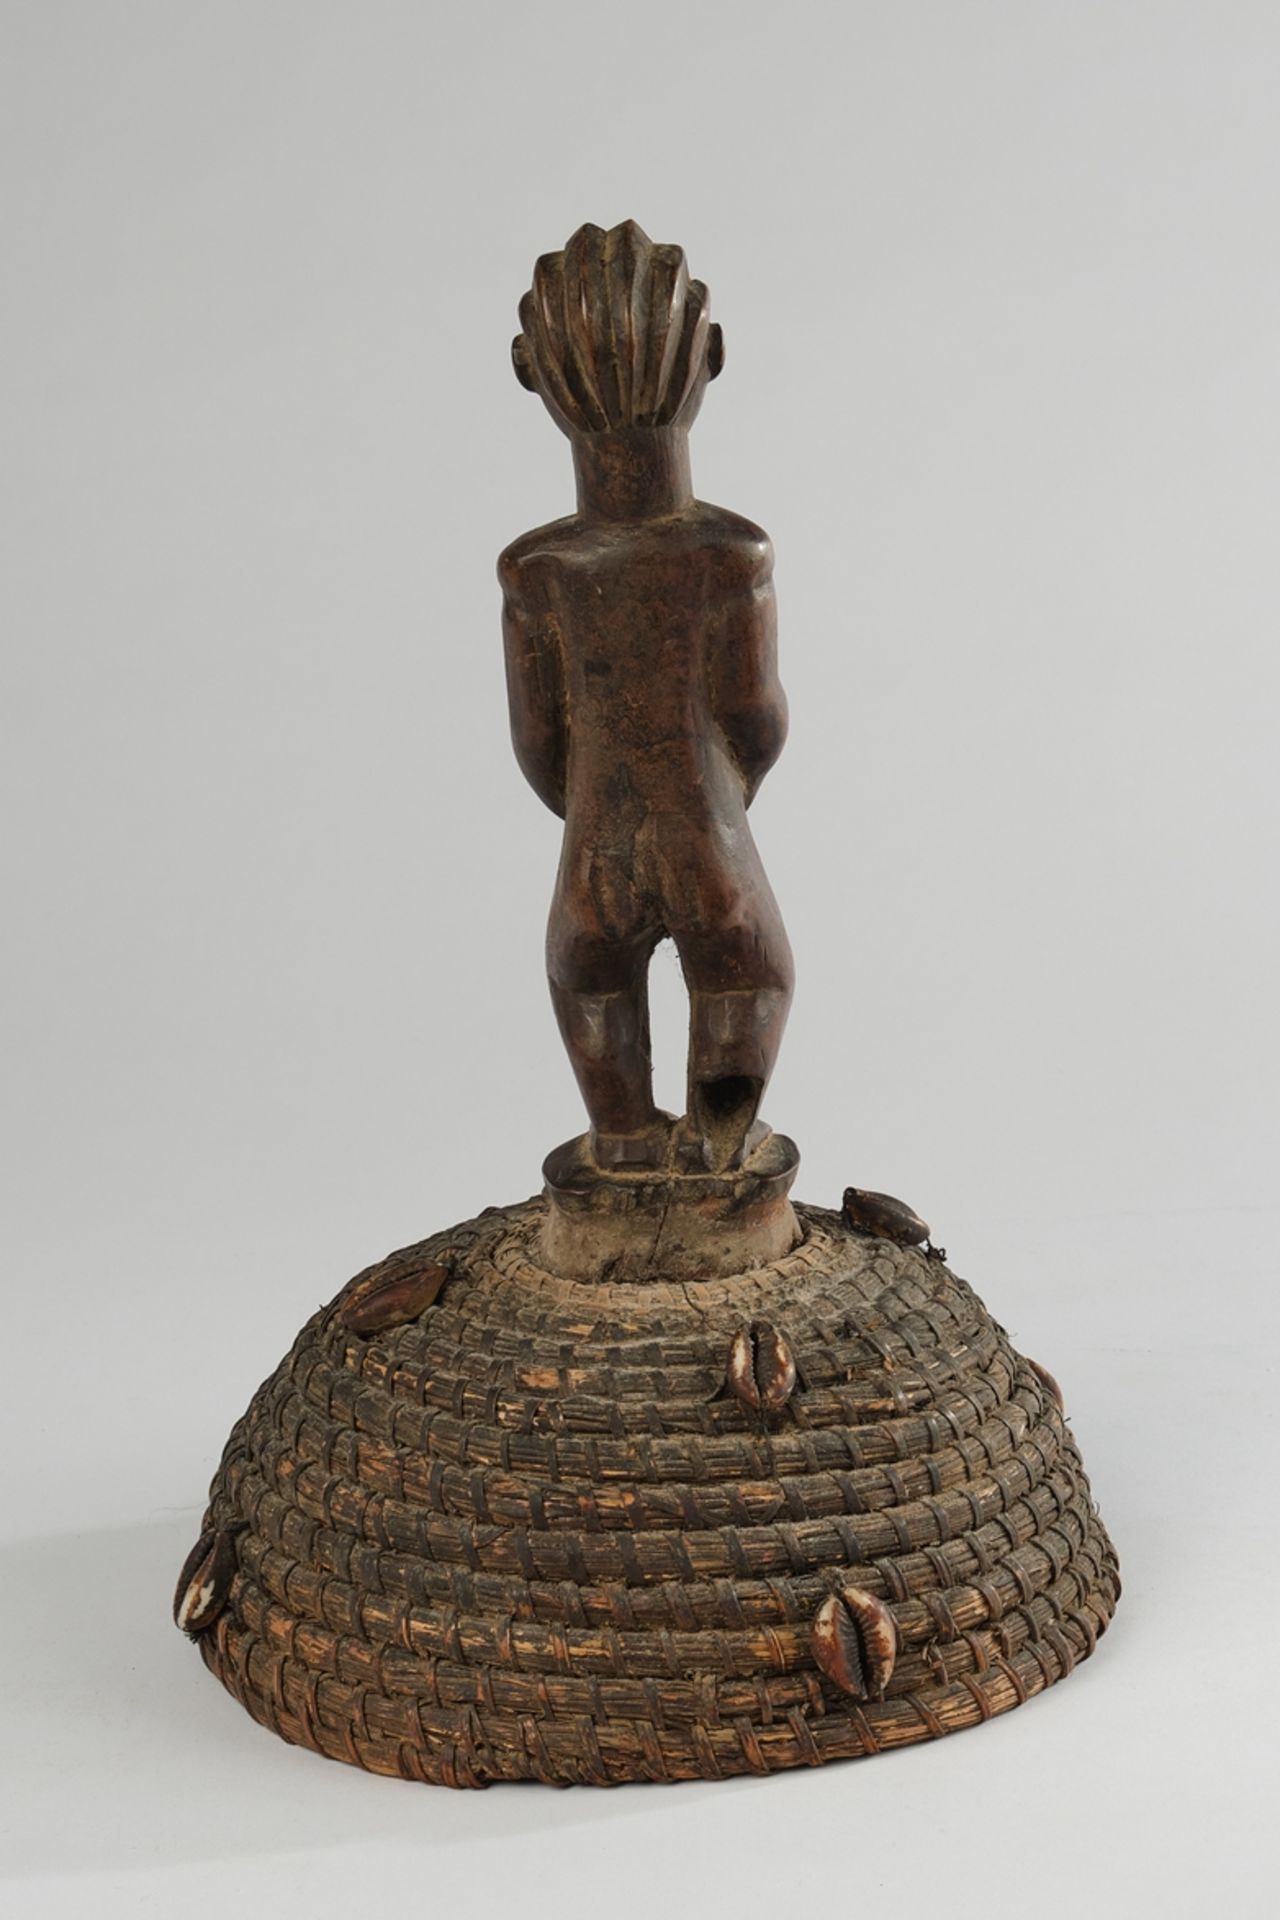 Tanzaufsatz, Luba, Kongo, Afrika, stehende weibliche Figur aus Holz auf Kappe aus Pflanzenfasern mi - Image 3 of 4